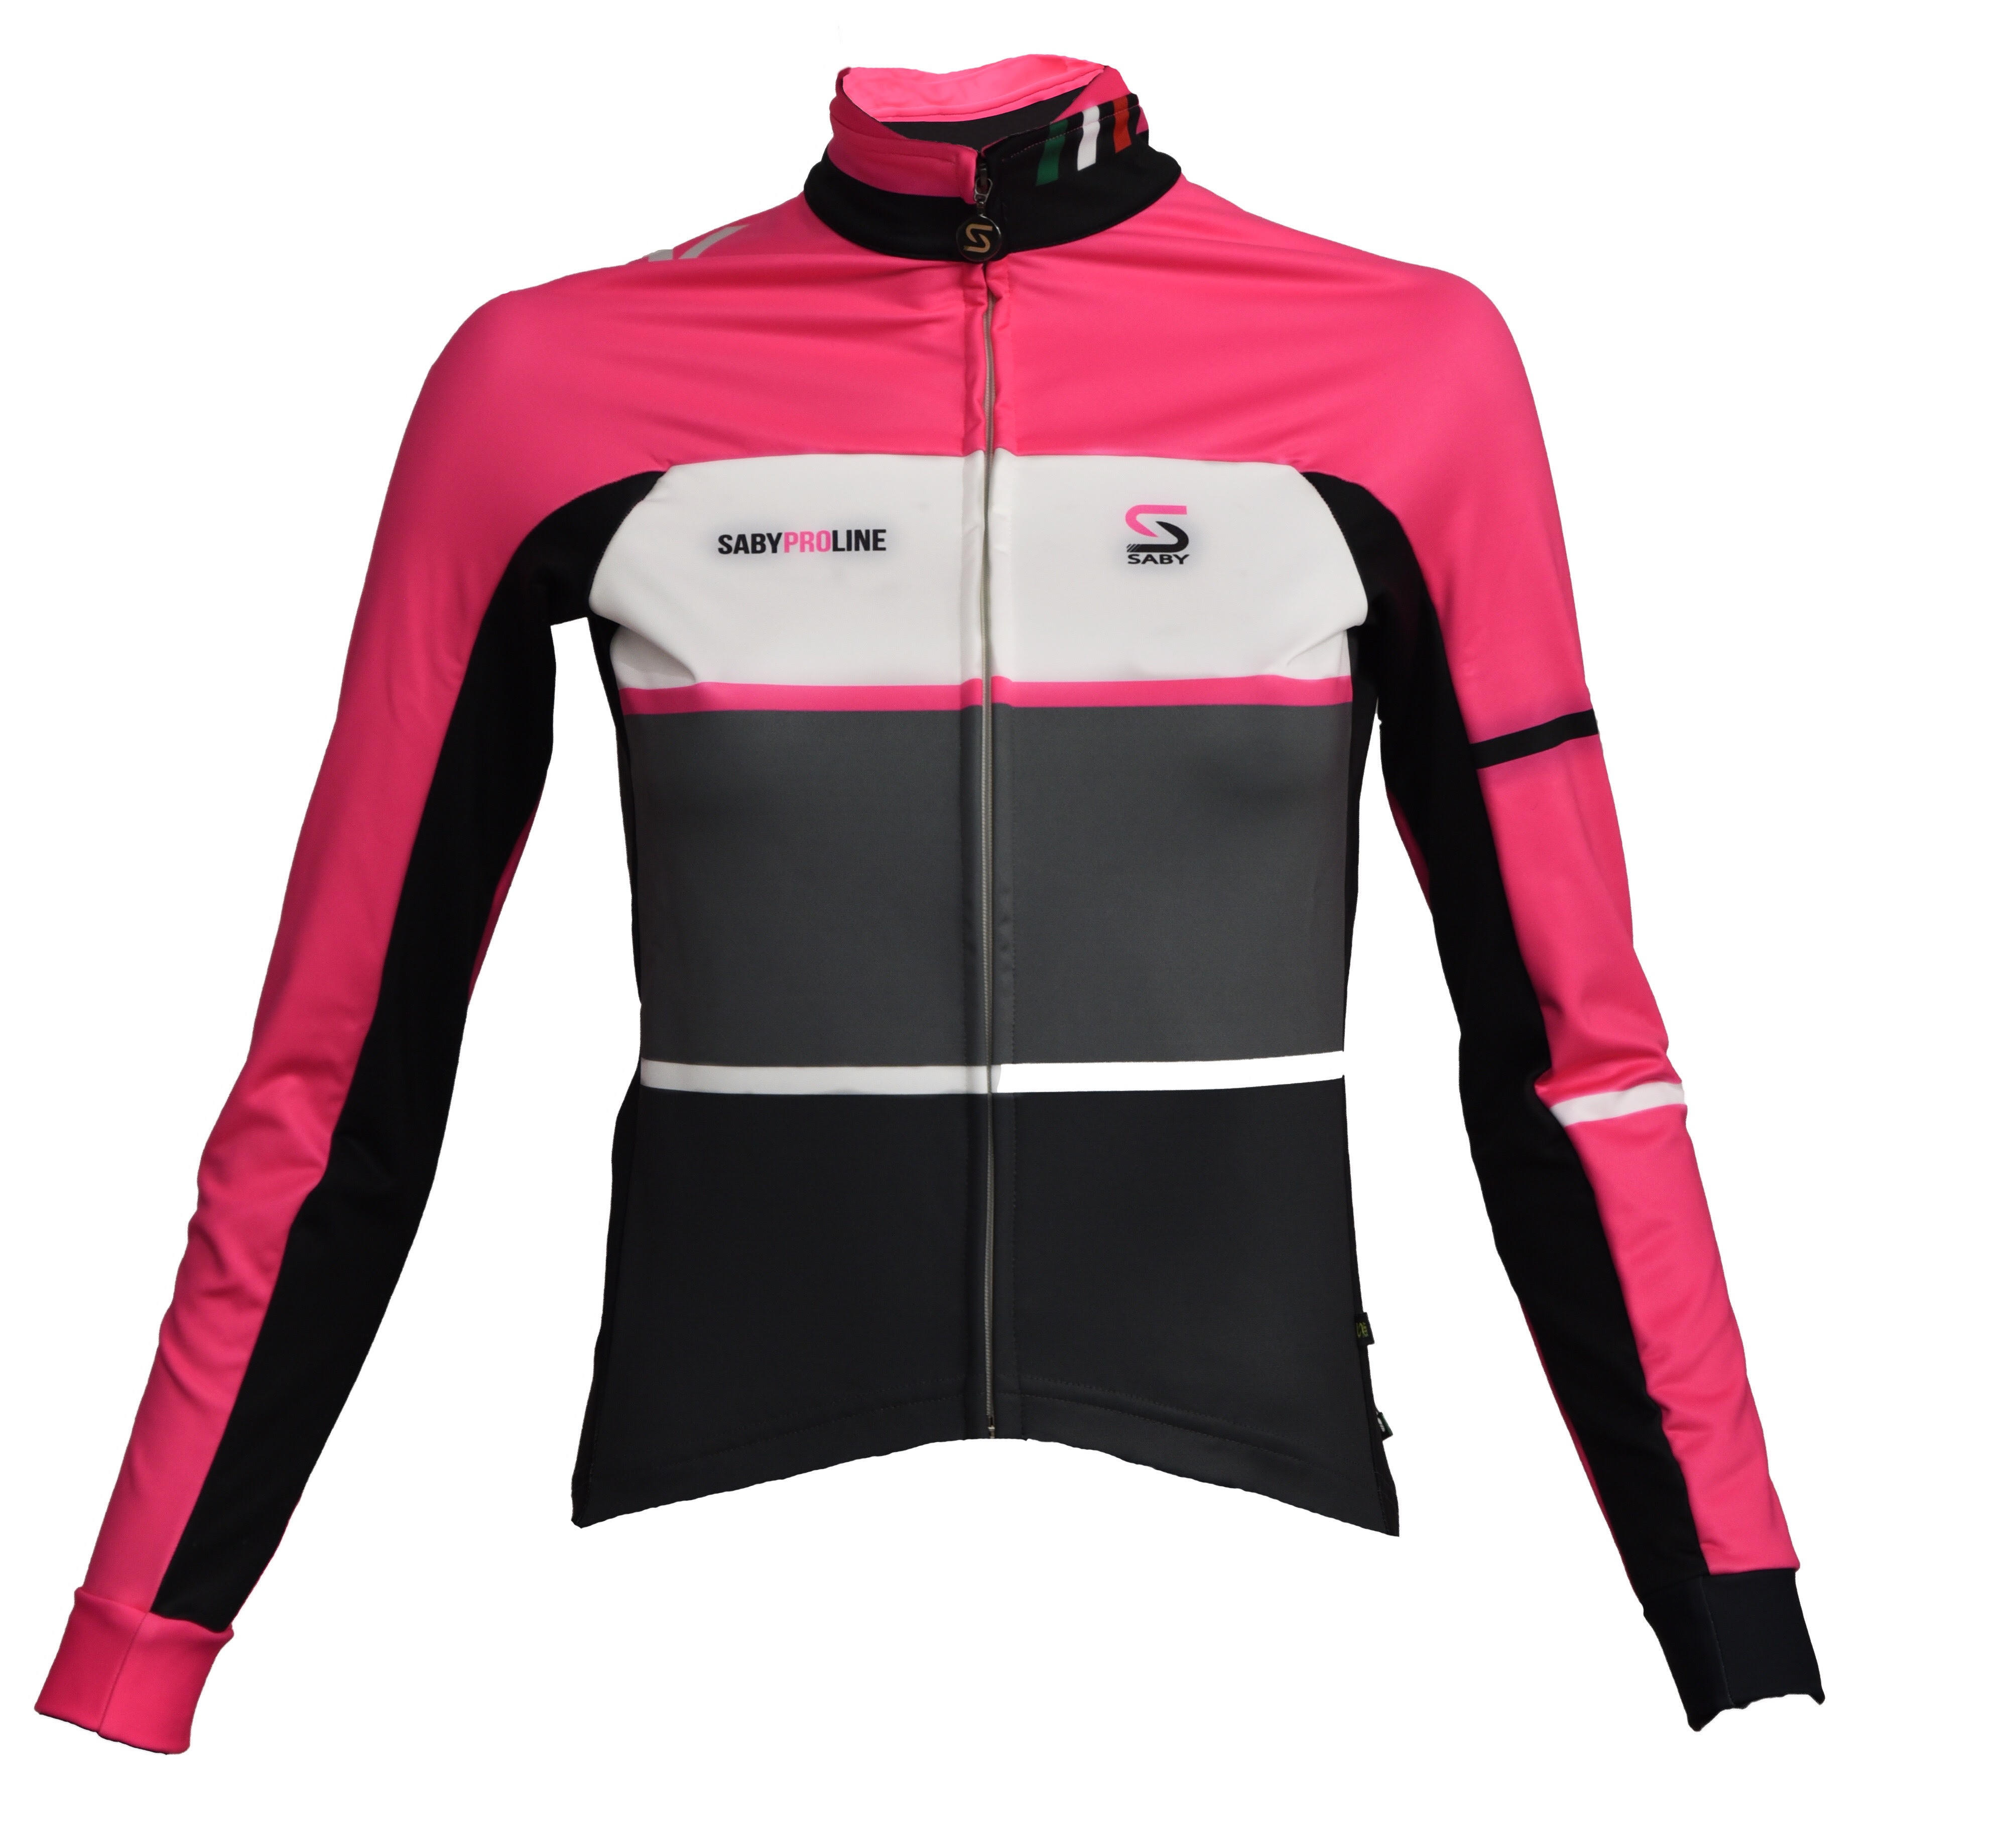 Giubbino invernale donna Linea PRO  Saby Sport - Abbigliamento sportivo e  per ciclismo made in Italy